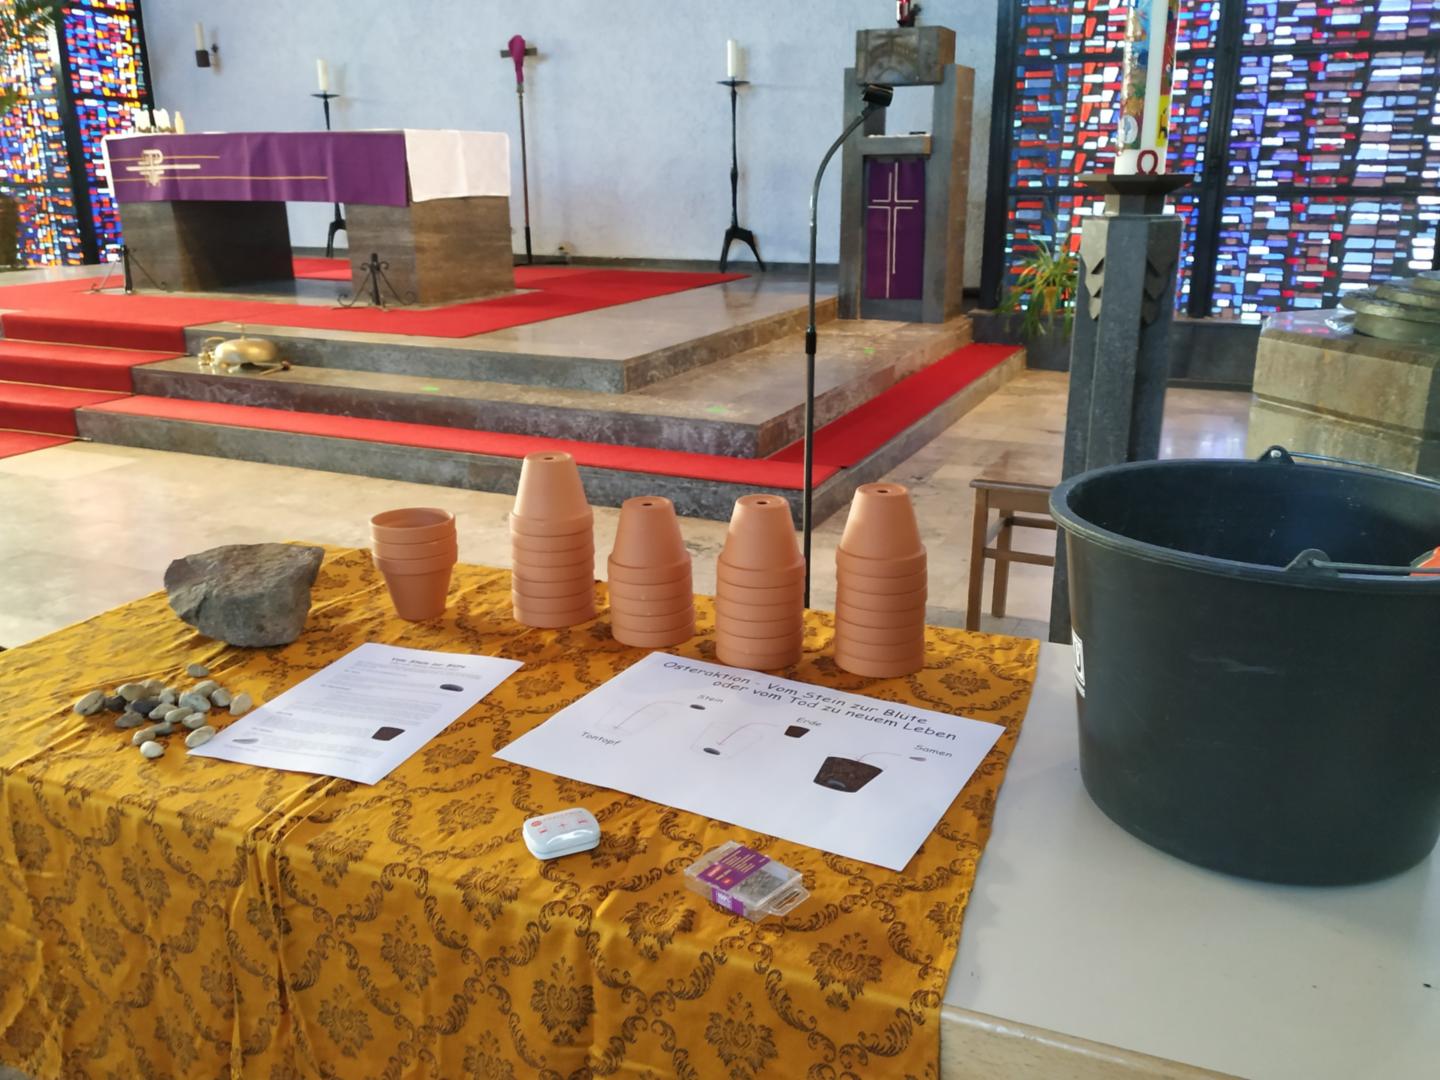 Bring einen Stein mit - Tontöpfe, Erde und Samen stehen in der Kirche bereit (c) Dominique Humm